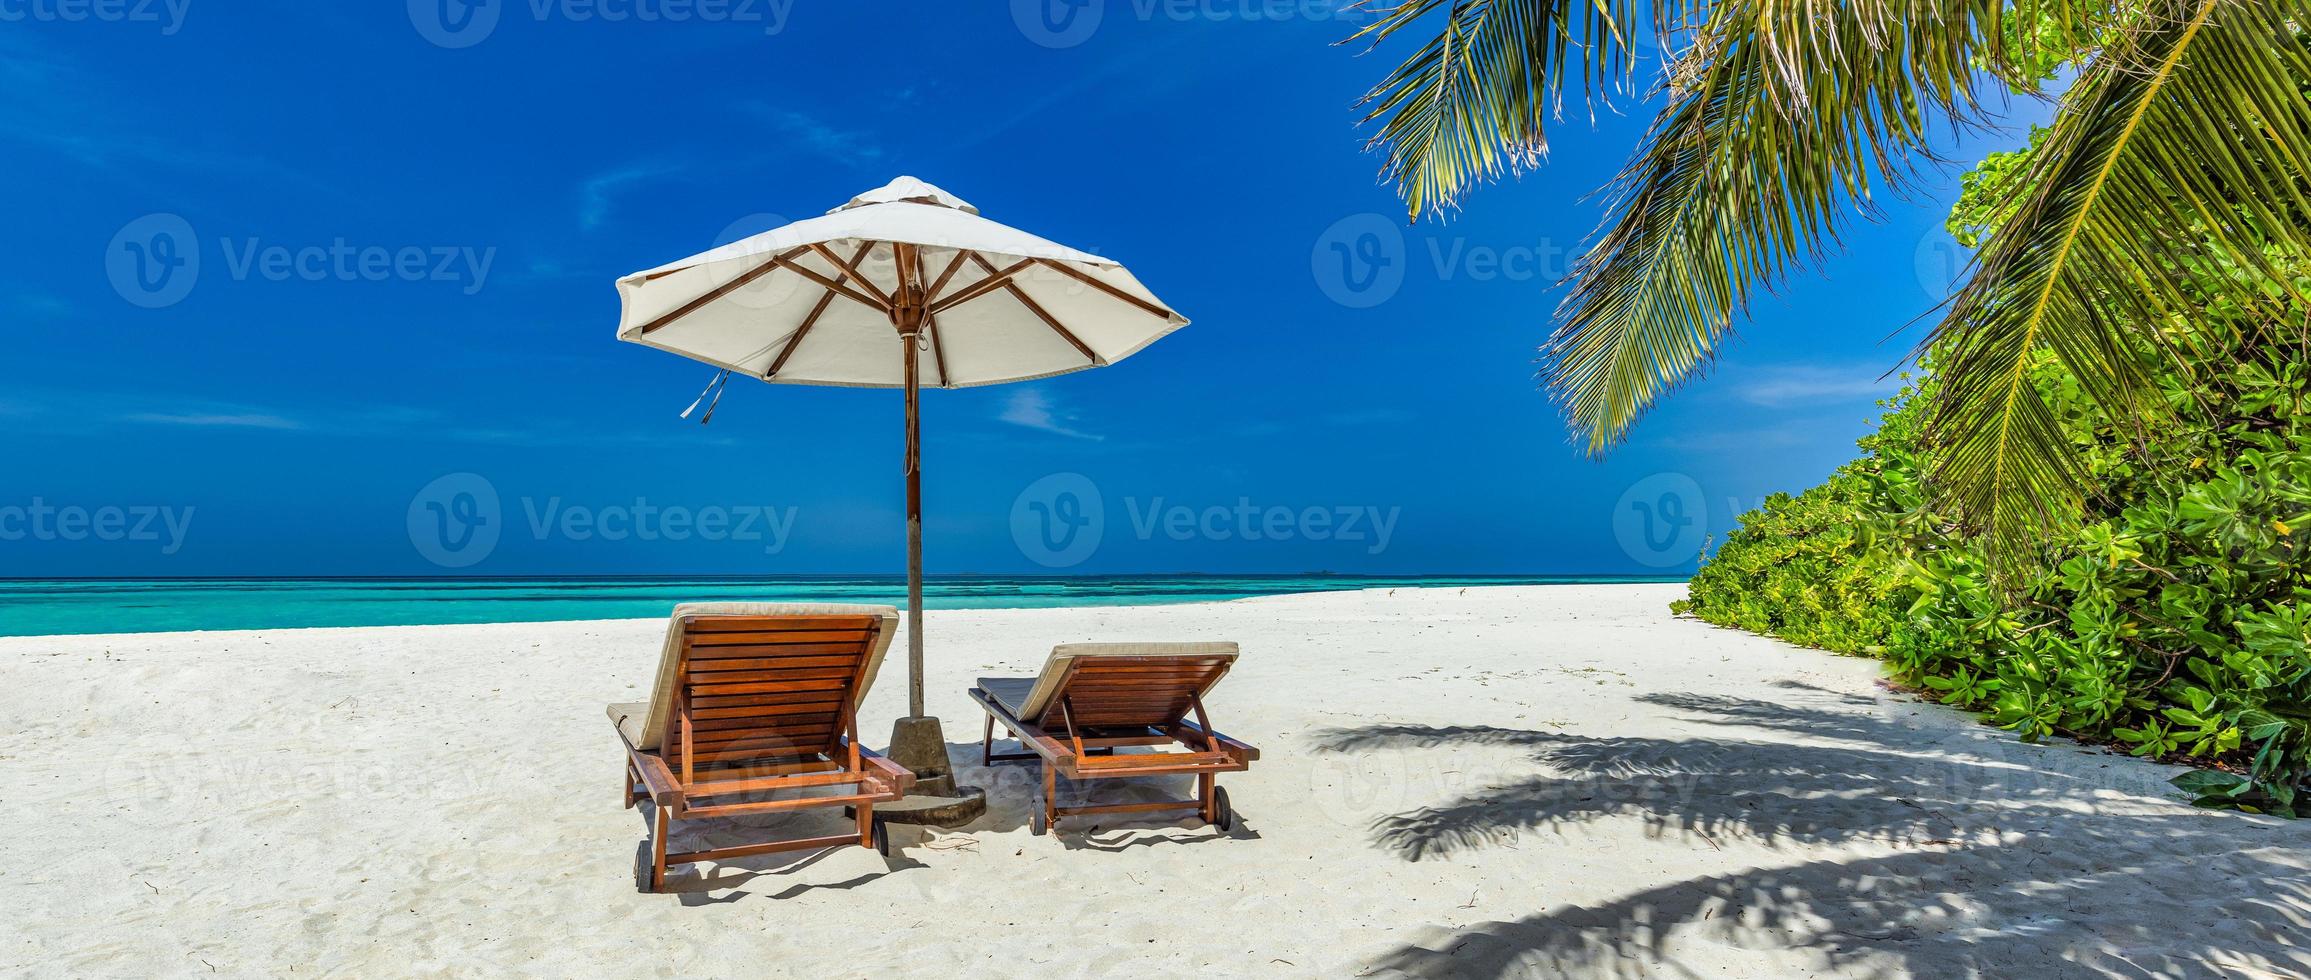 mooi tropisch zonnig oever, paar zon bedden stoelen paraplu onder palm boom bladeren. zee zand lucht. romantisch kom tot rust levensstijl panoramisch eiland strand achtergrond. zomer reizen exotisch vakantie panorama foto